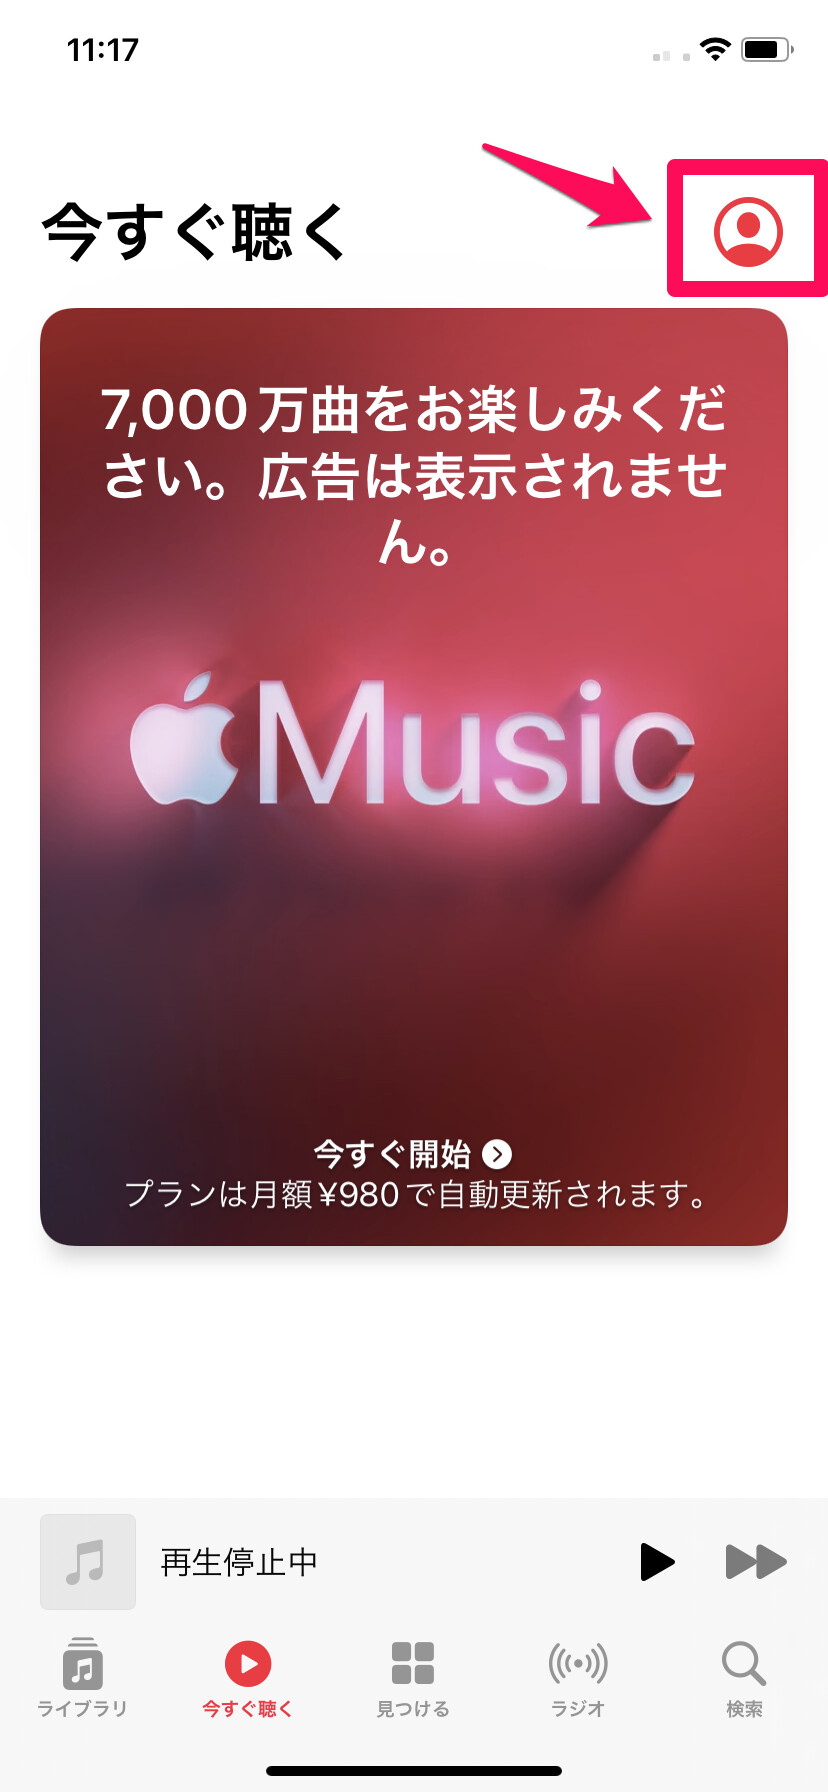 Apple Music アプリを開き、右上の「アカウント」マークをタップ